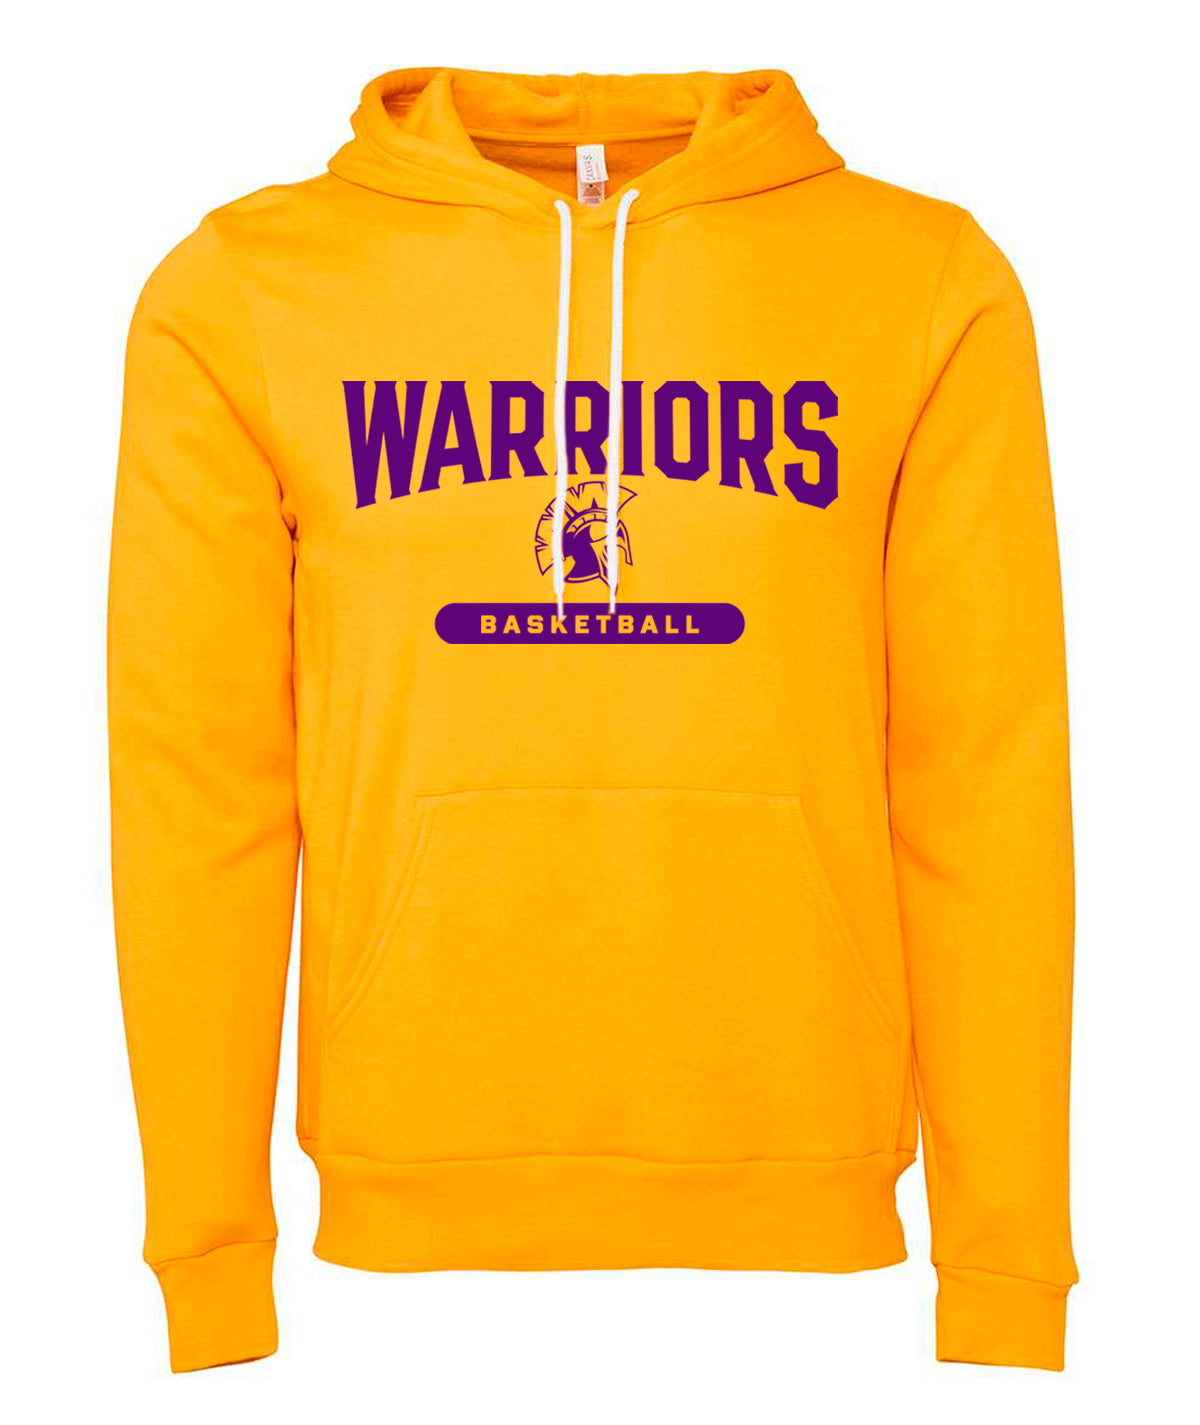 Warriors Basketball Softstyle Hooded Sweatshirt